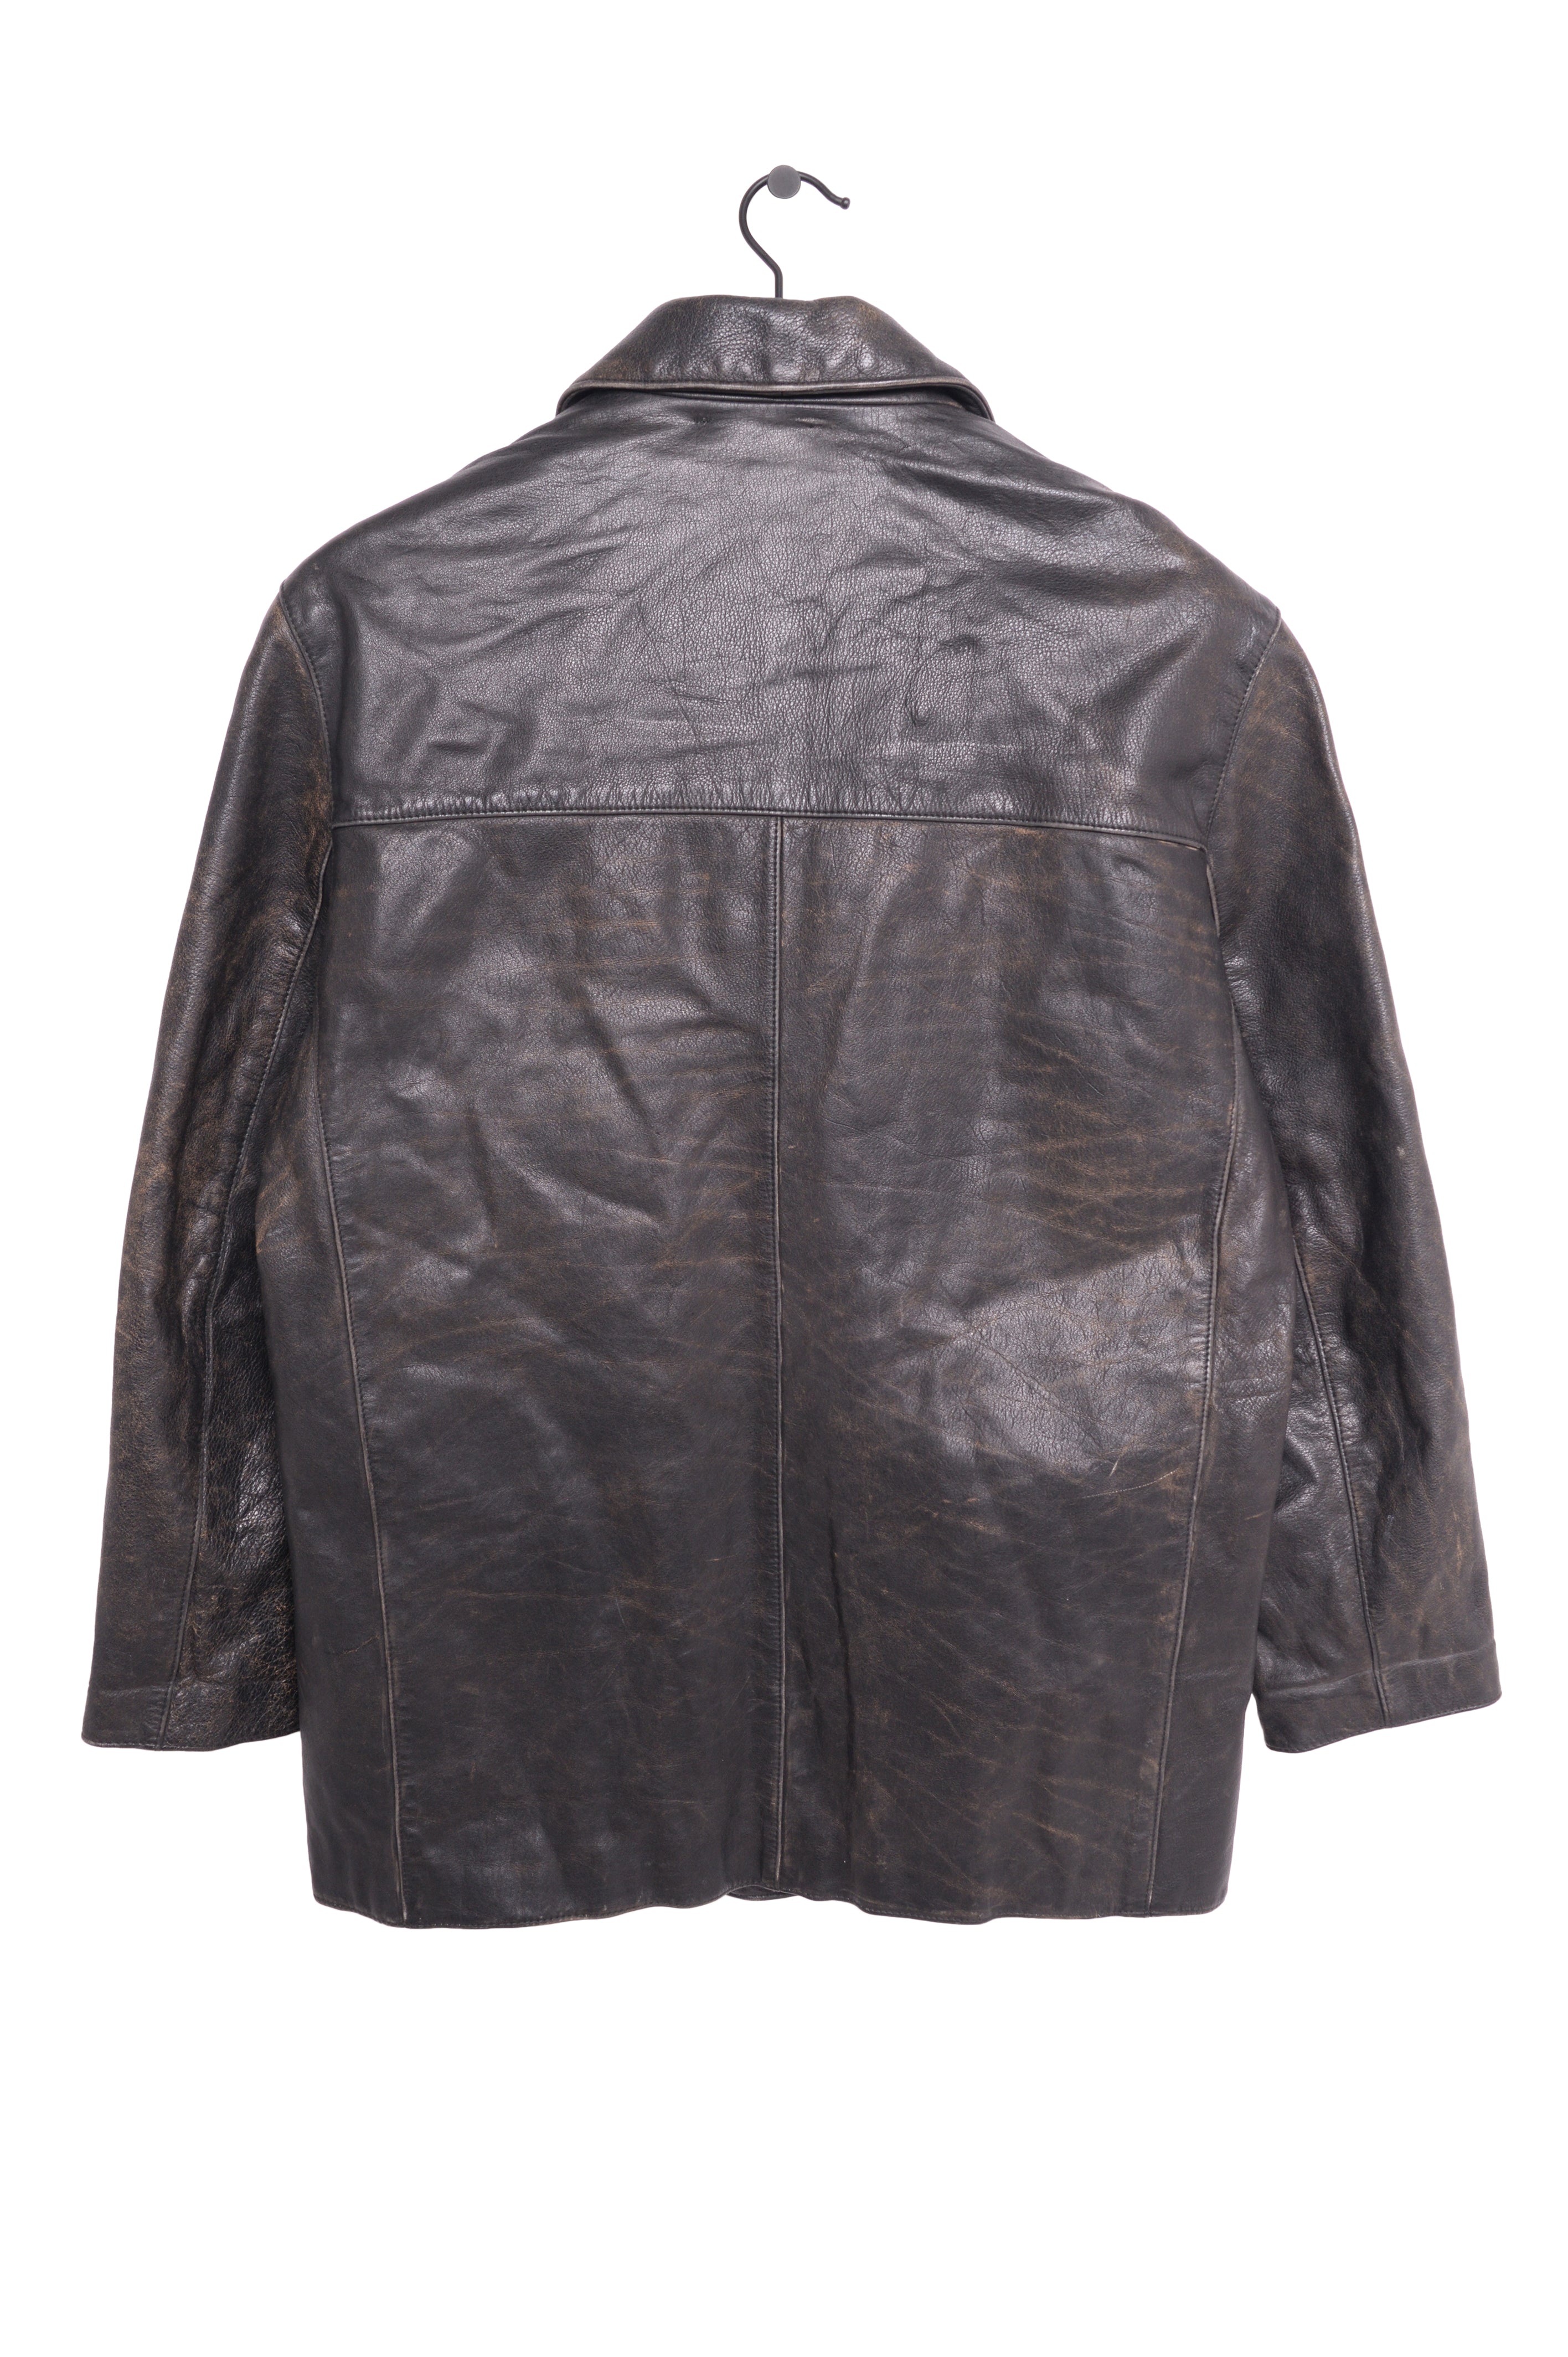 限定セールSALE1990s Vintage leather faded shoulder bag バッグ